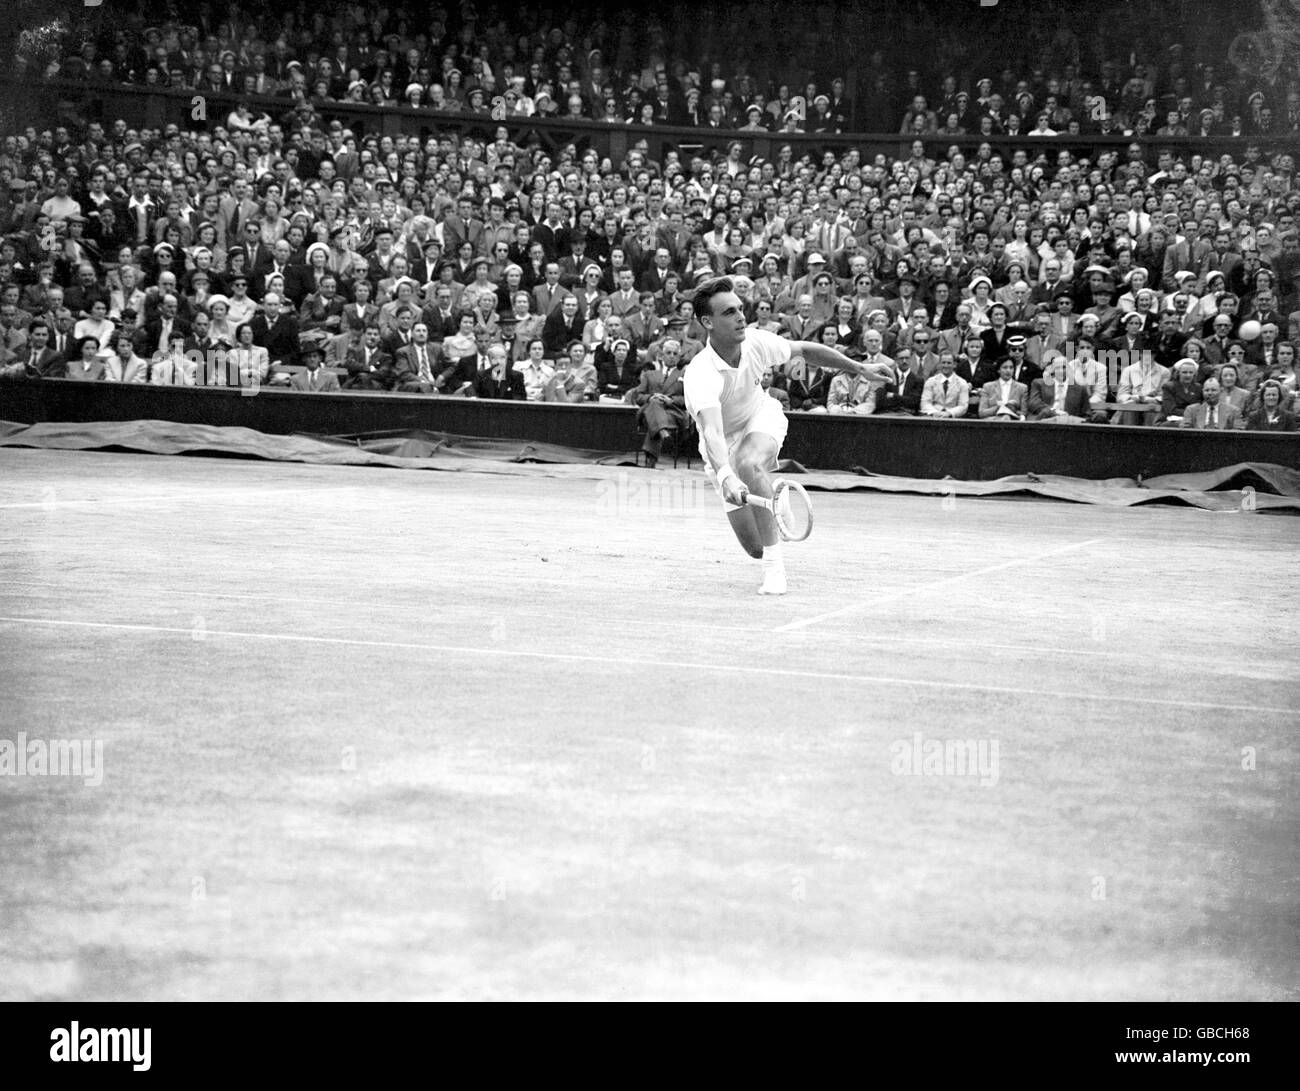 Tennis - Championnats de Wimbledon - les célibataires pour hommes - finale - Kurt Nielsen / Vic Seixas. Vic Seixas en action en finale Banque D'Images